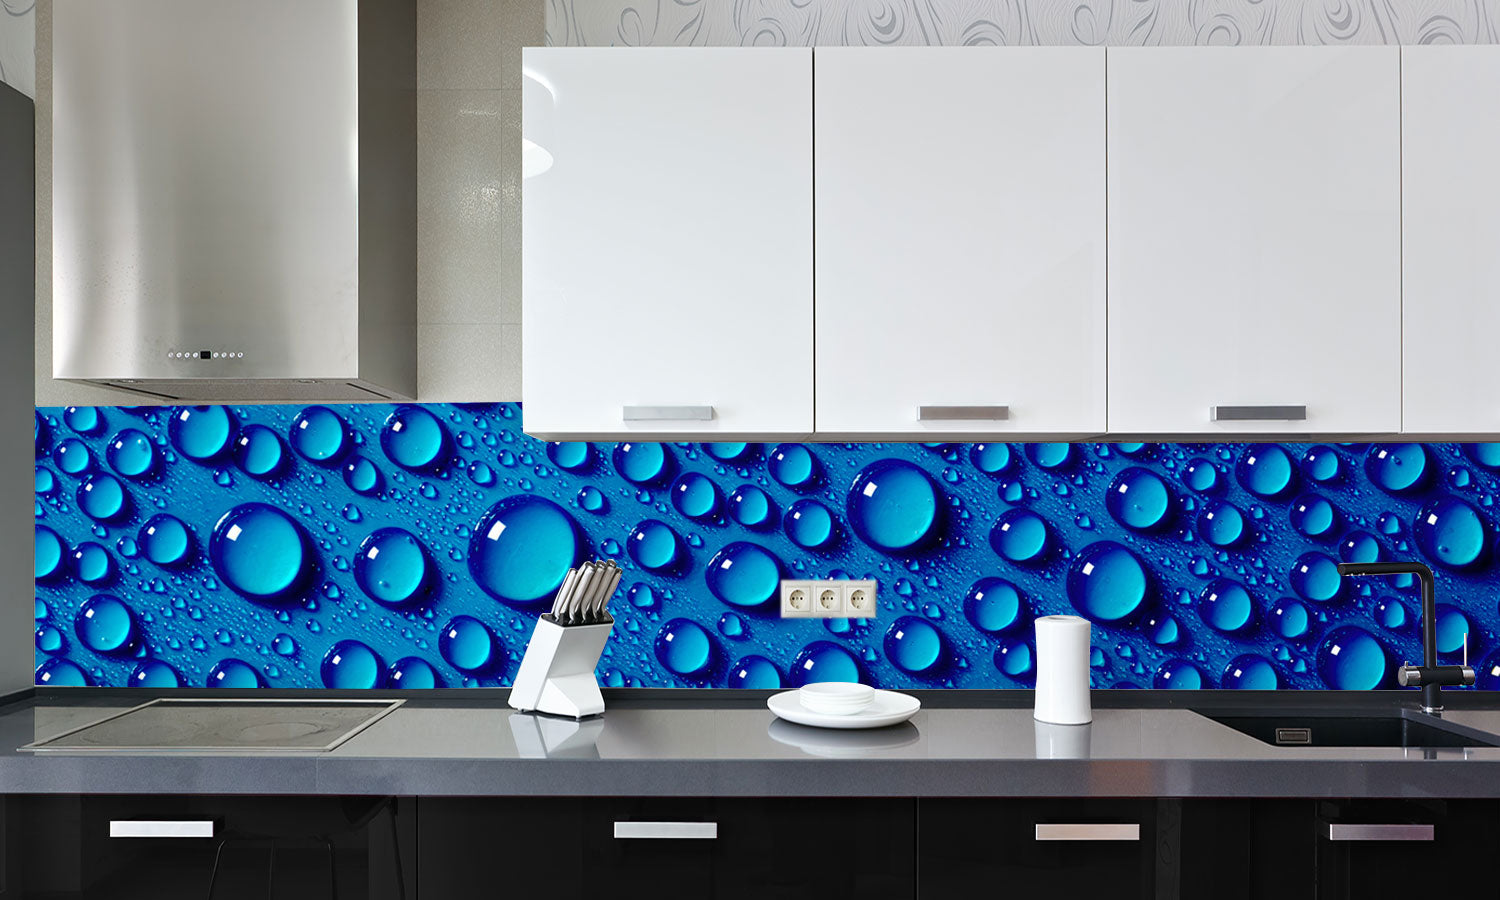 Kuhinjski paneli  Water drops background - Stekleni / PVC plošče / Pleksi steklo - s tiskom za kuhinjo, Stenske obloge PKU0388 - Life-decor.si